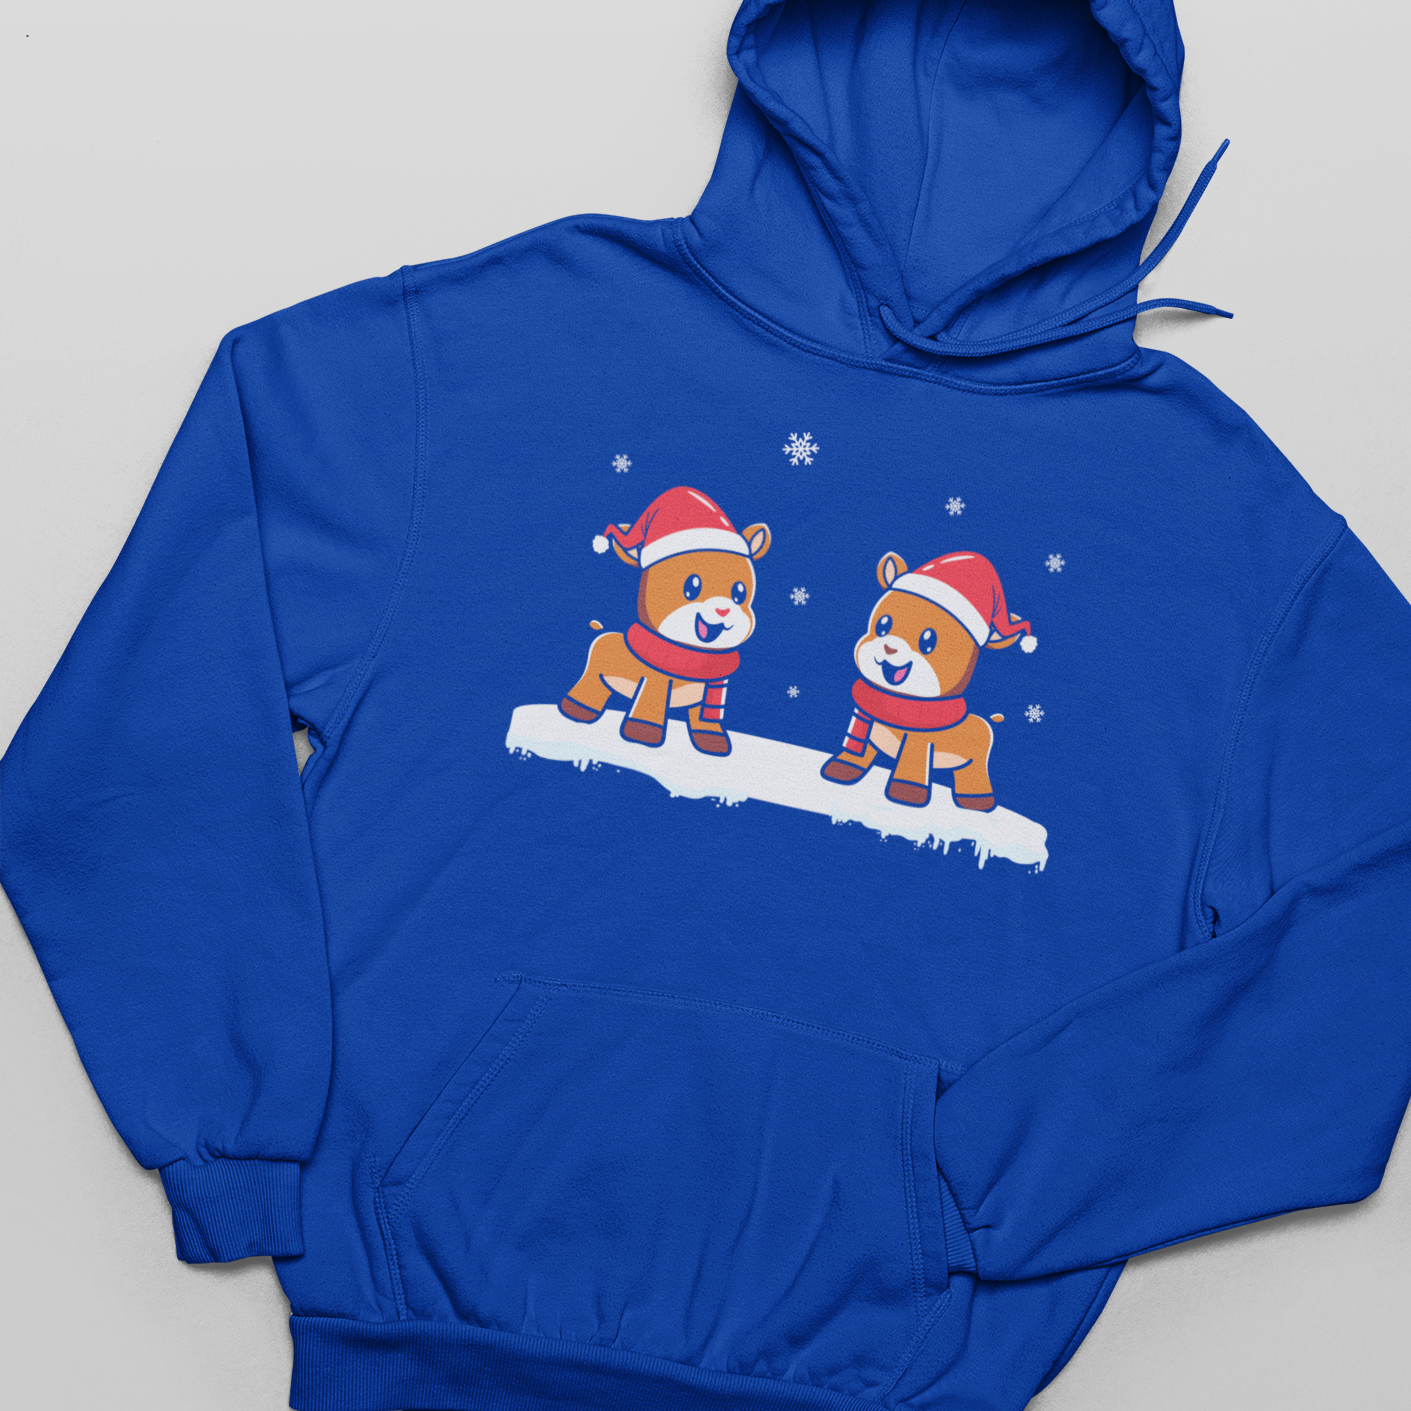 Reindeer, Christmas, Winter - Unisex Pullover Hoodie